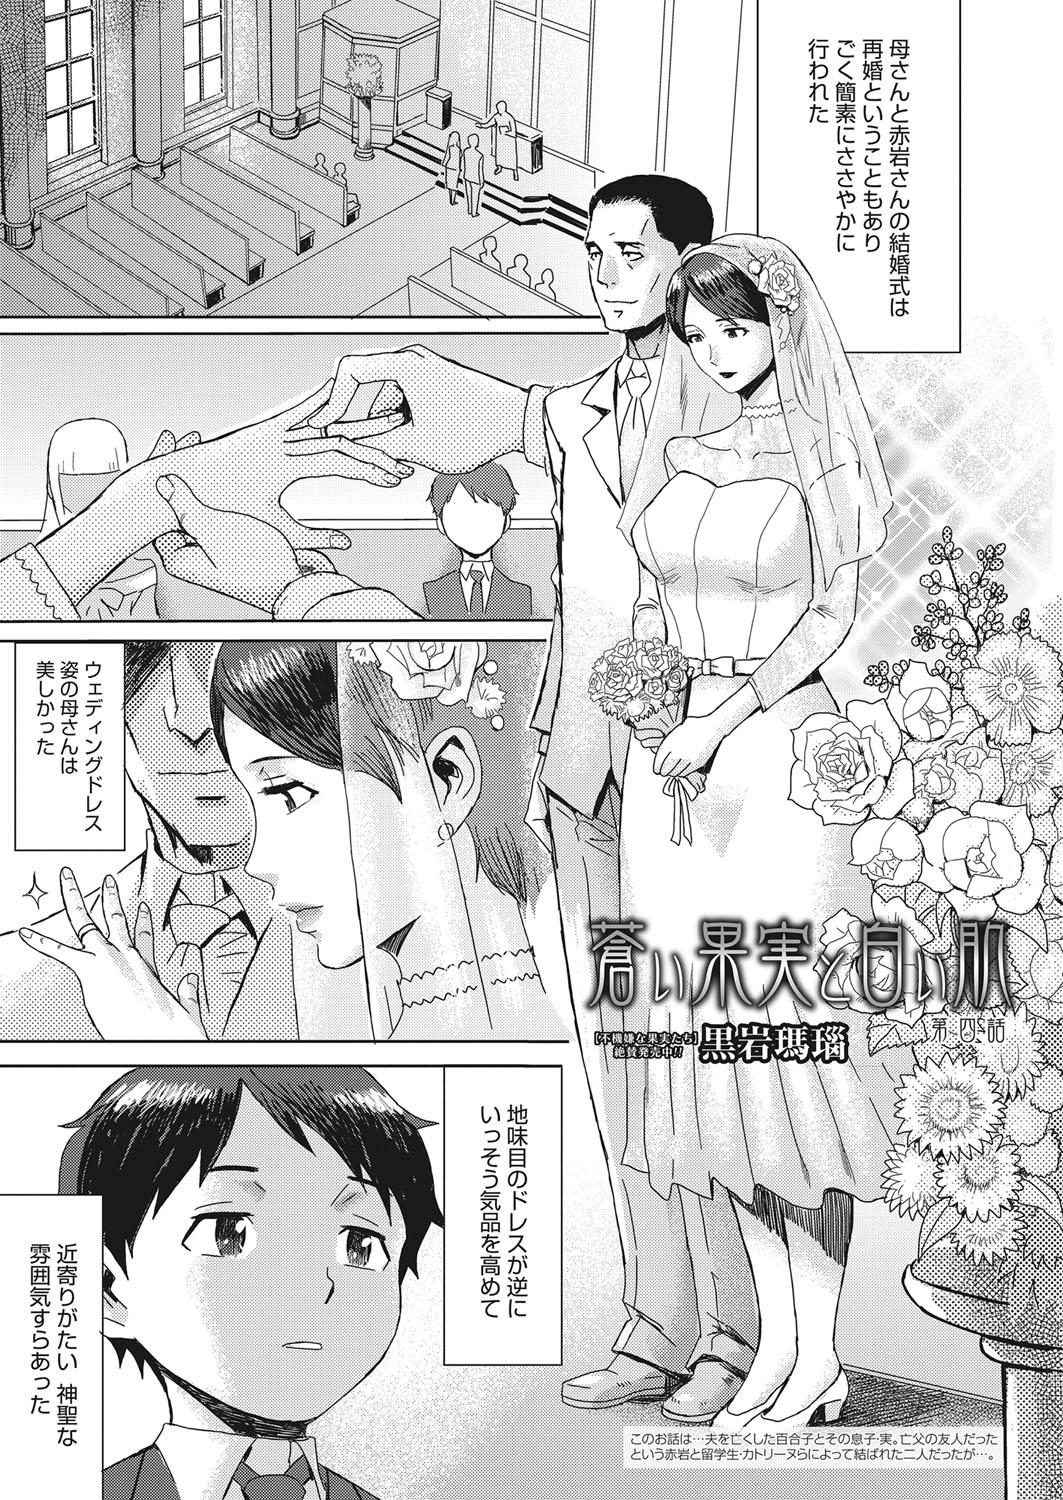 Friends Web Manga Bangaichi Vol. 15 Asshole - Page 4